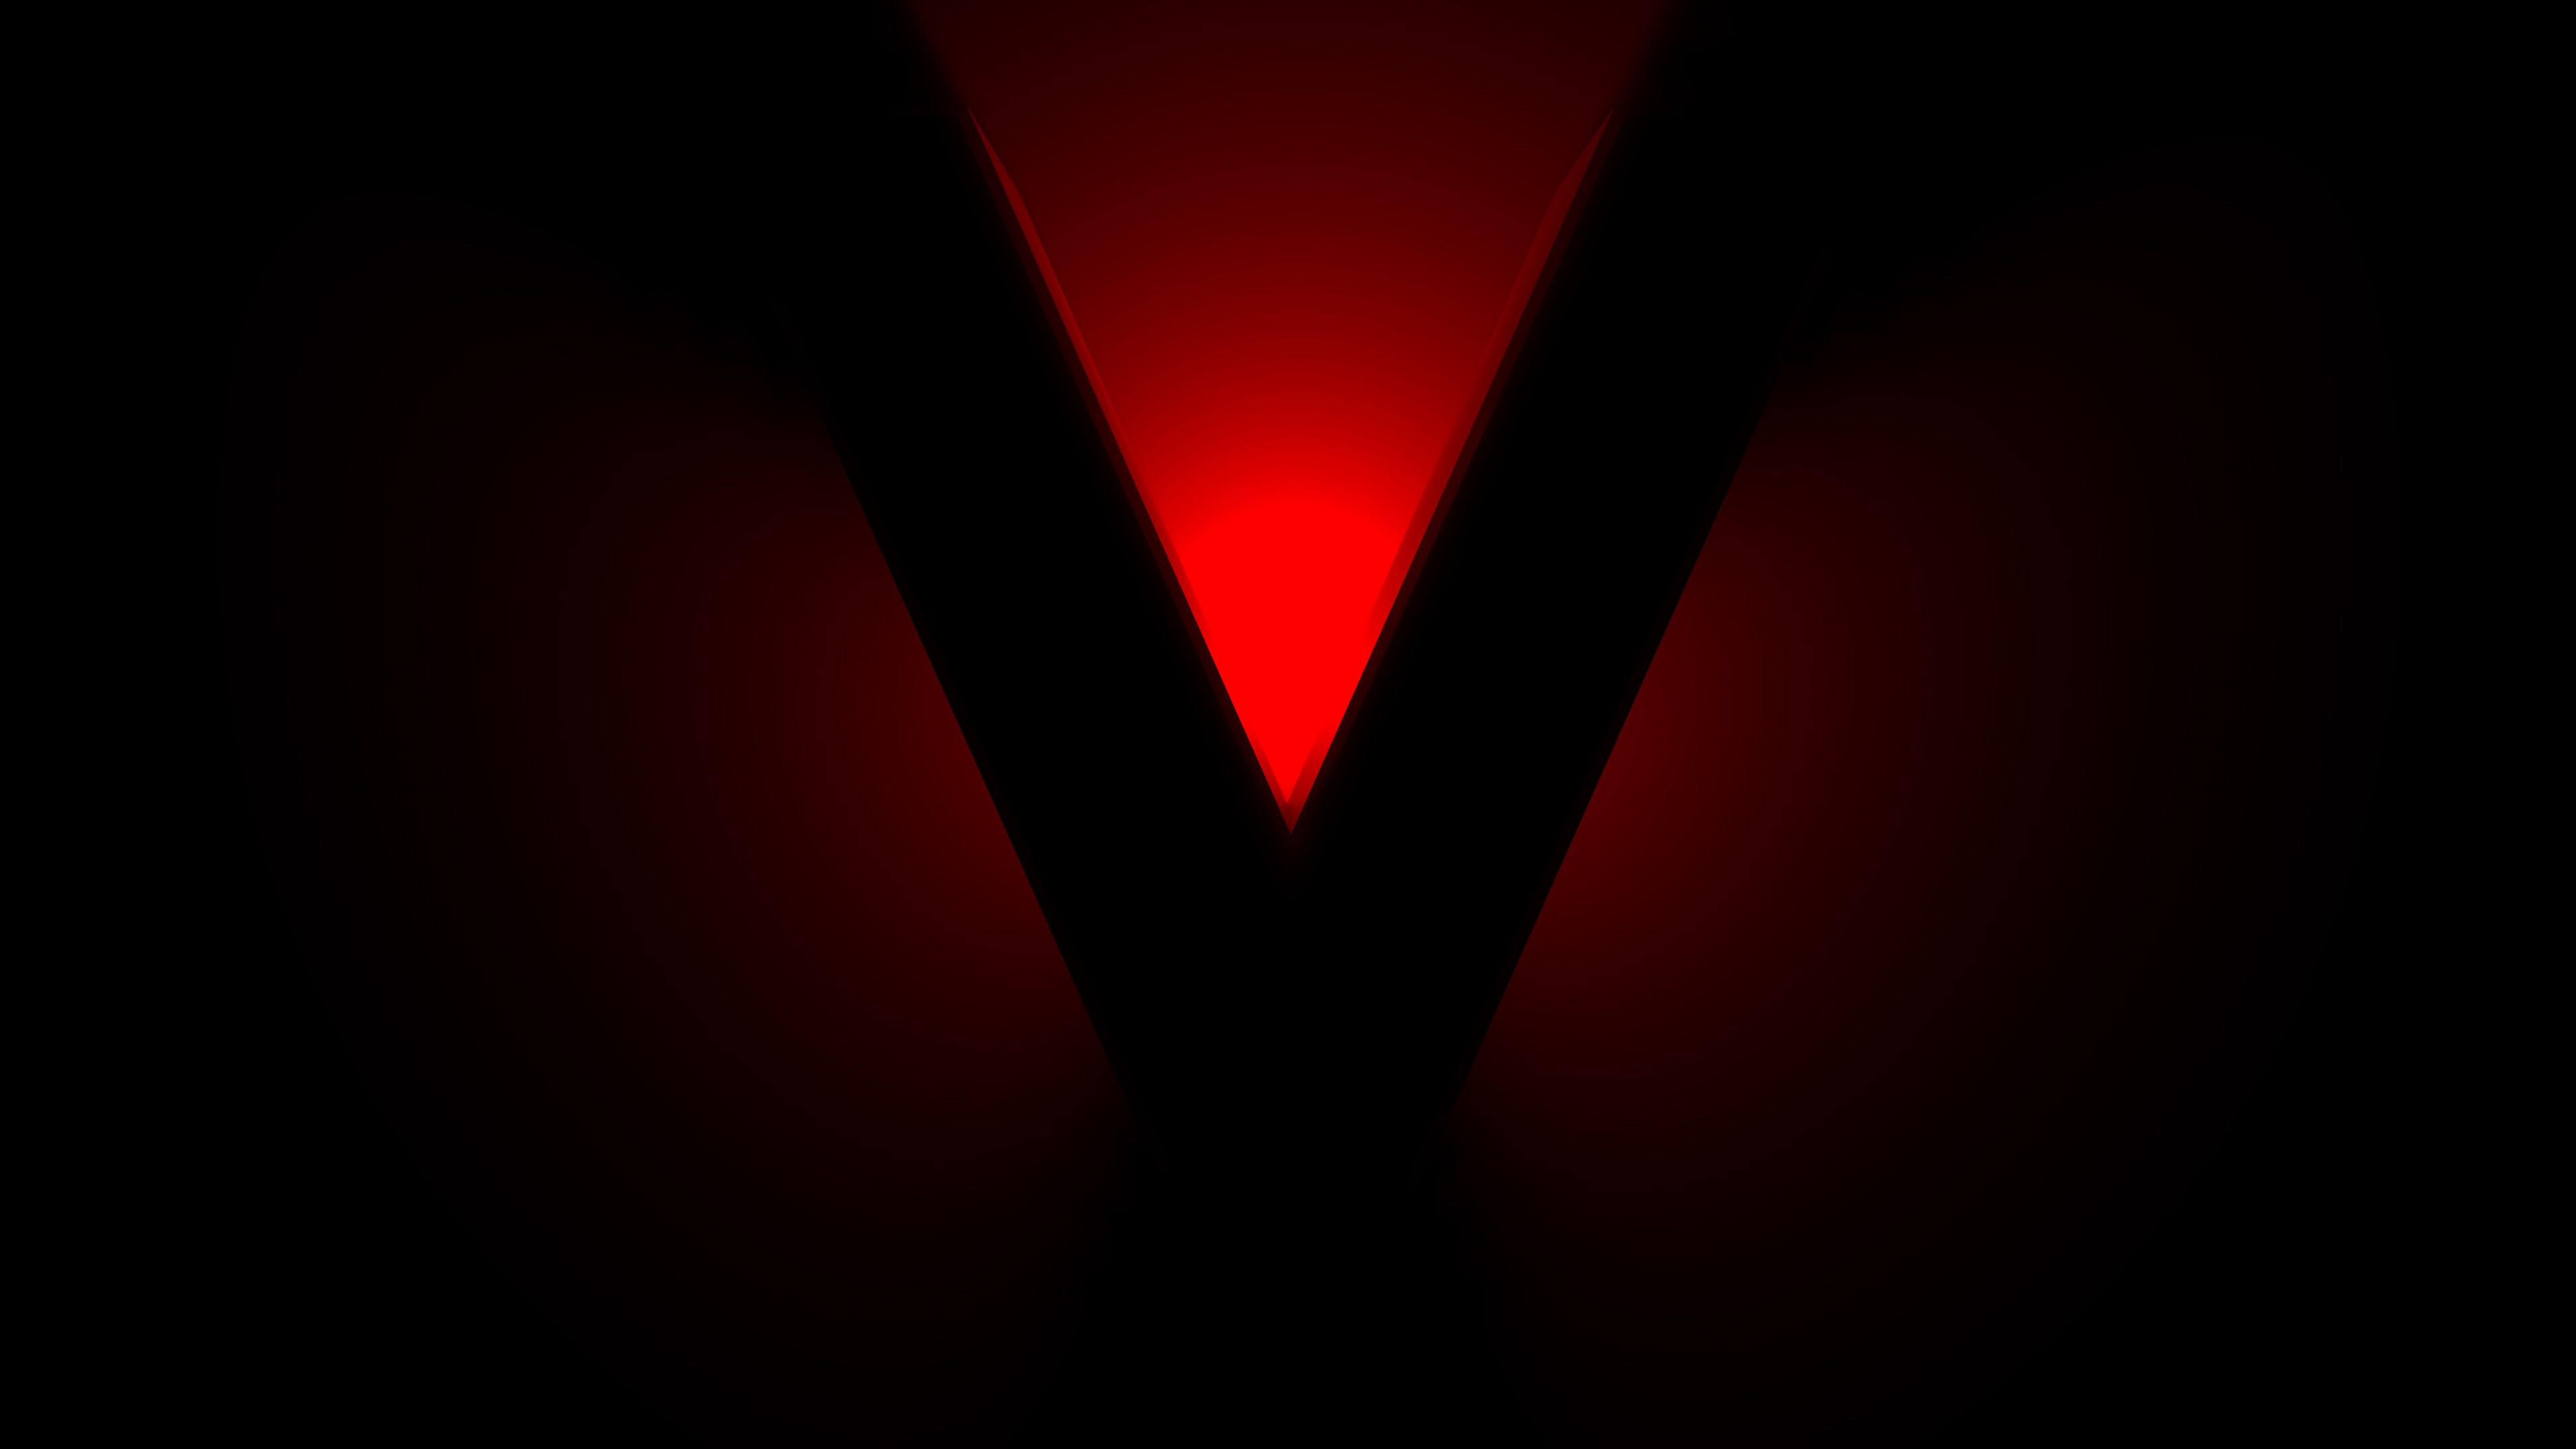 V for Valentine 4K Wallpaper .100hdwallpaper.com